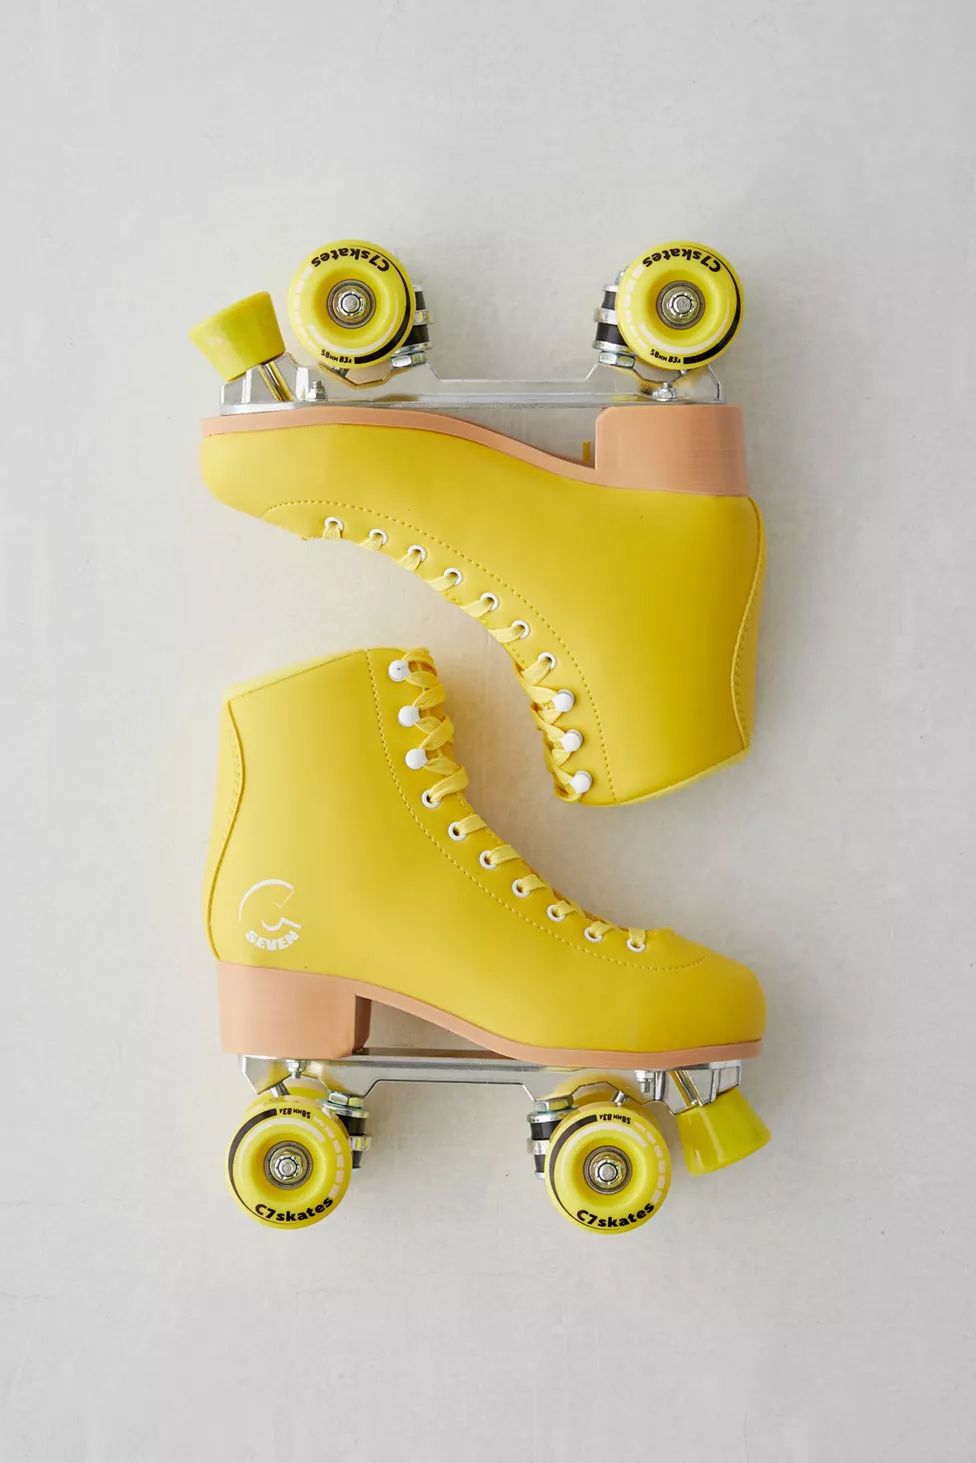 黄色のローラースケート